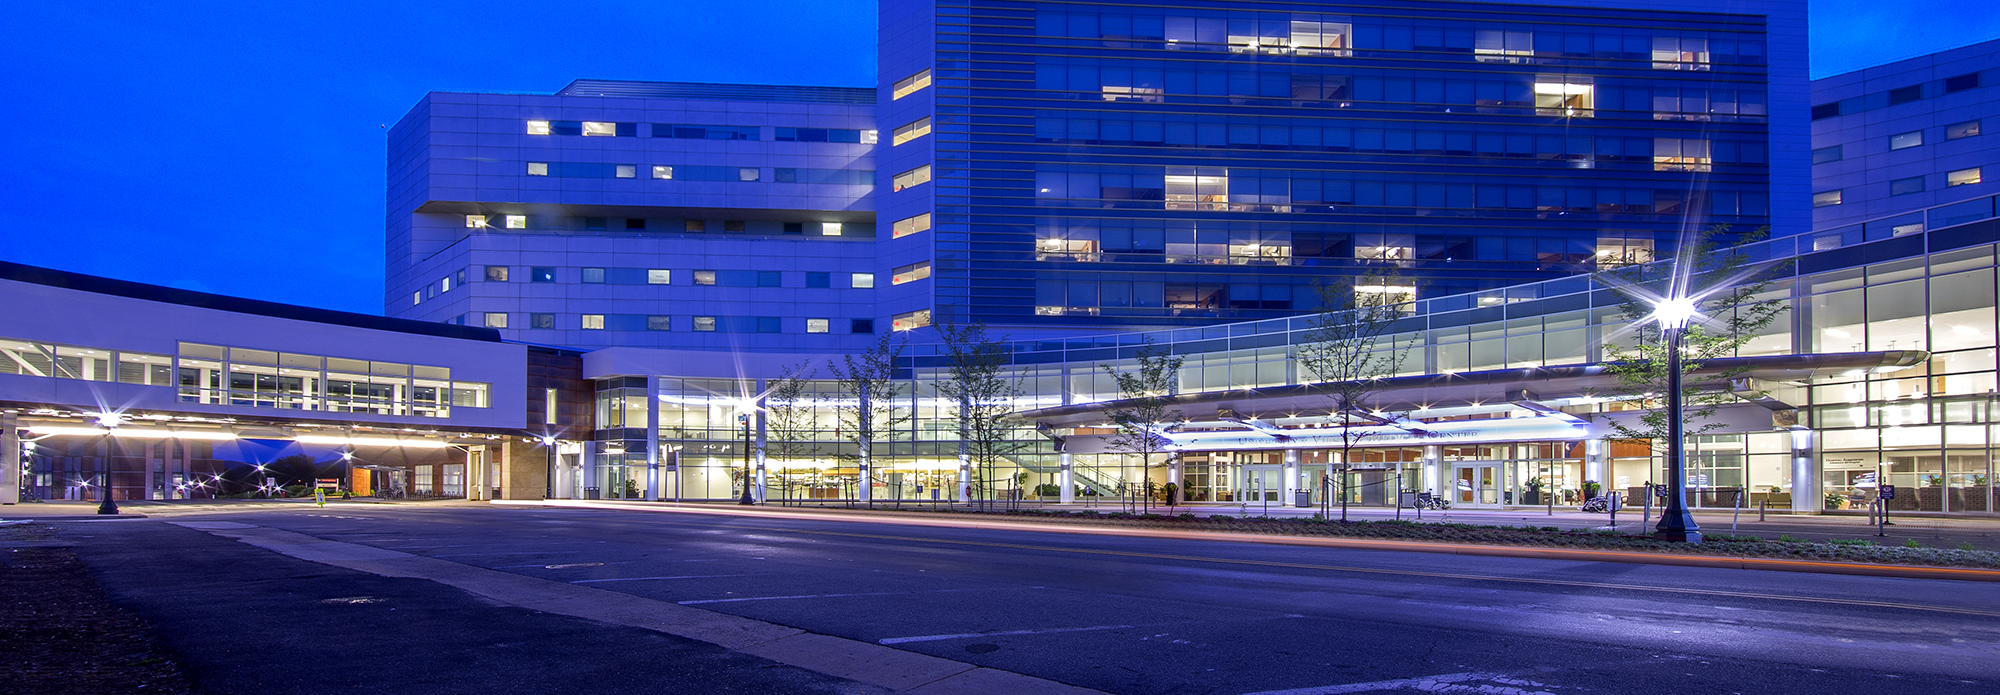 UVA Medical Center at Night